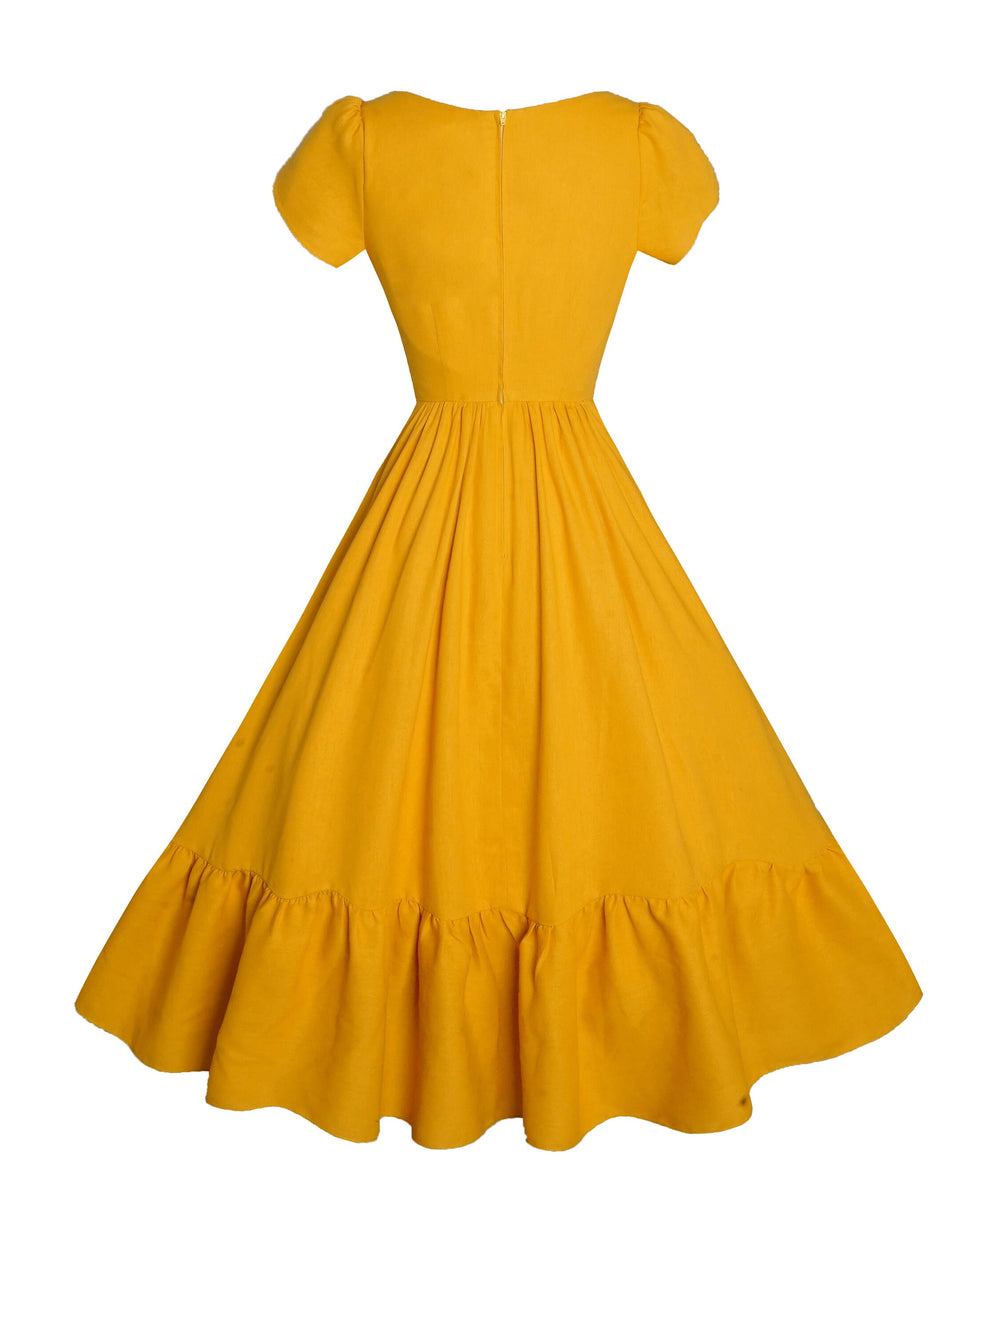 MTO - Ava Dress in Tuscany Yellow Linen